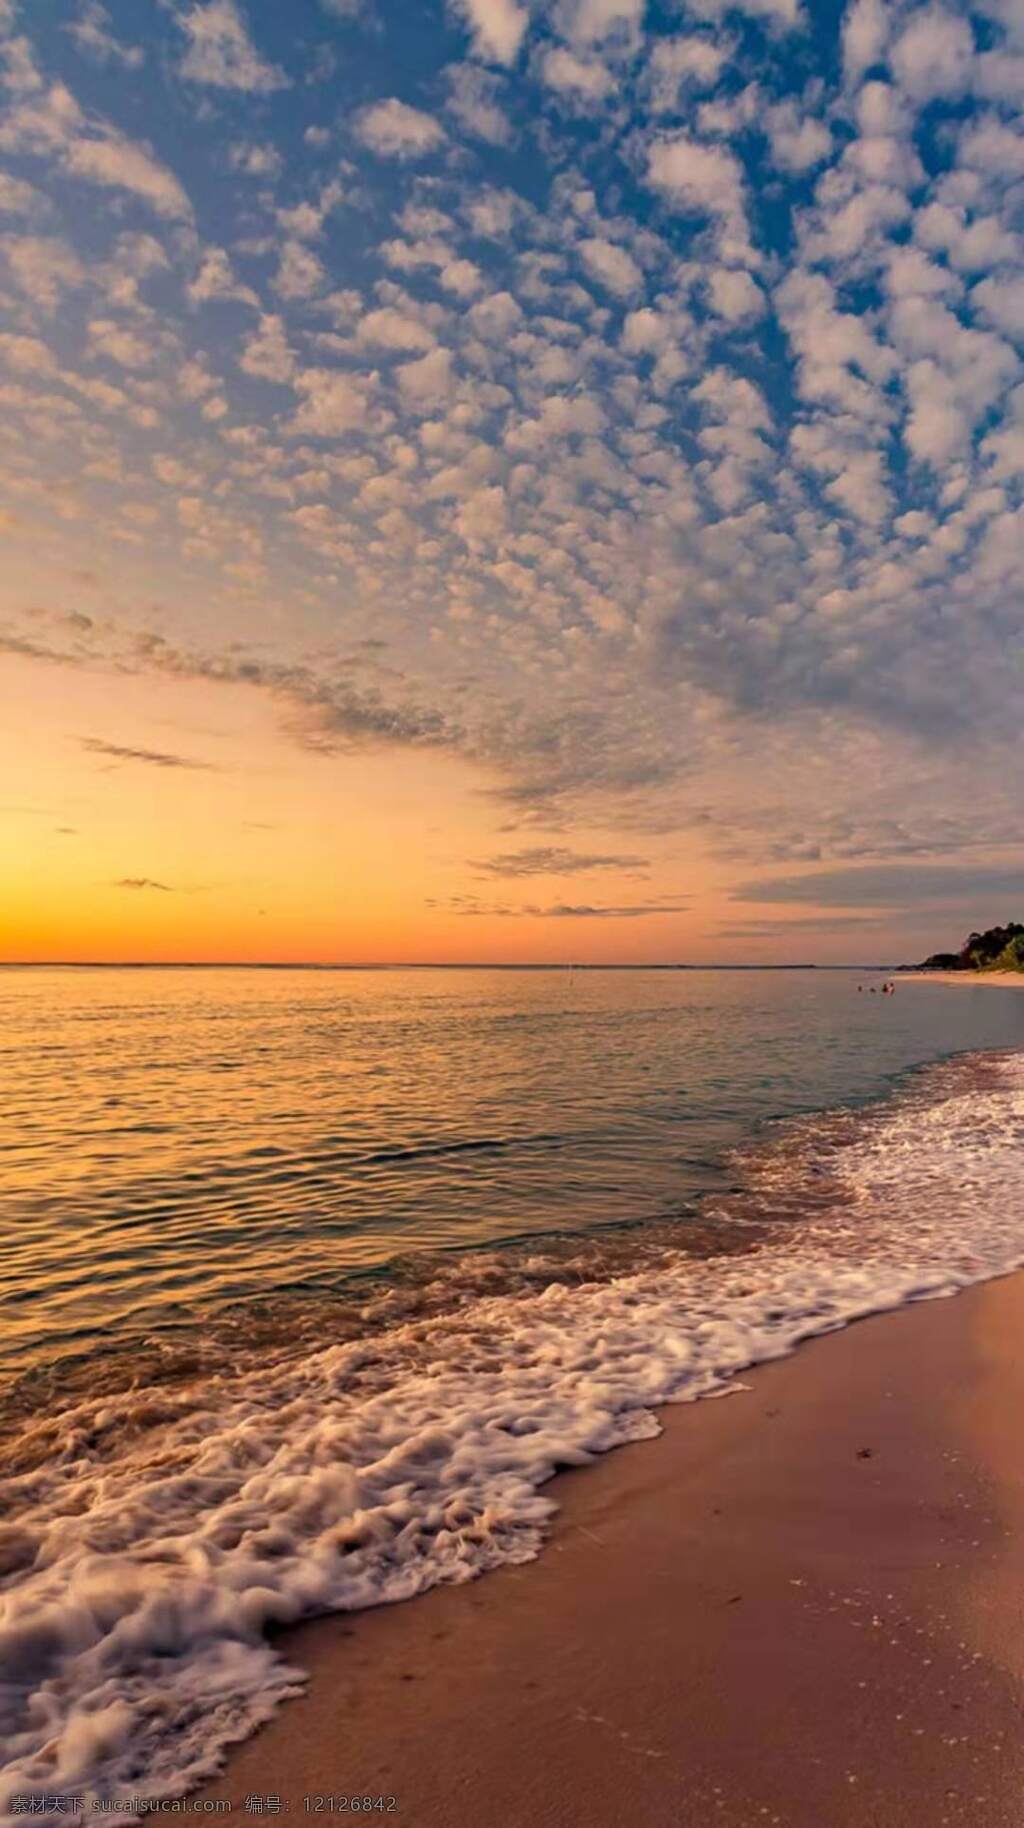 梦幻 般 海滩 风景 白云 云朵 金黄色的夕阳 宽阔的大海 海浪 浪花 美丽的海滩 美丽的风景 自然景观 山水风景